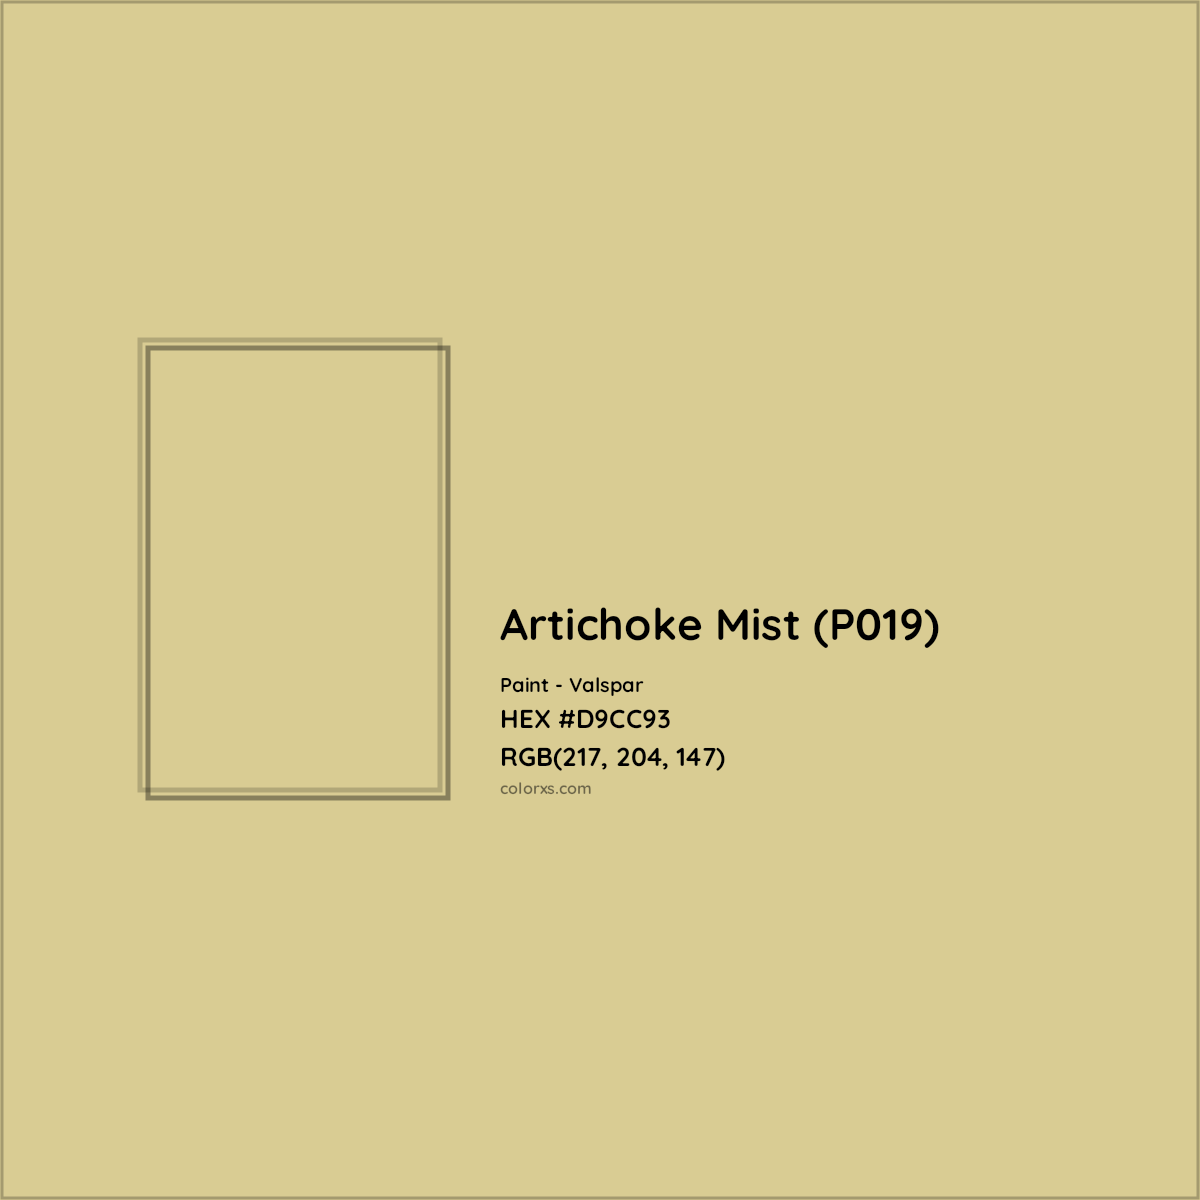 HEX #D9CC93 Artichoke Mist (P019) Paint Valspar - Color Code